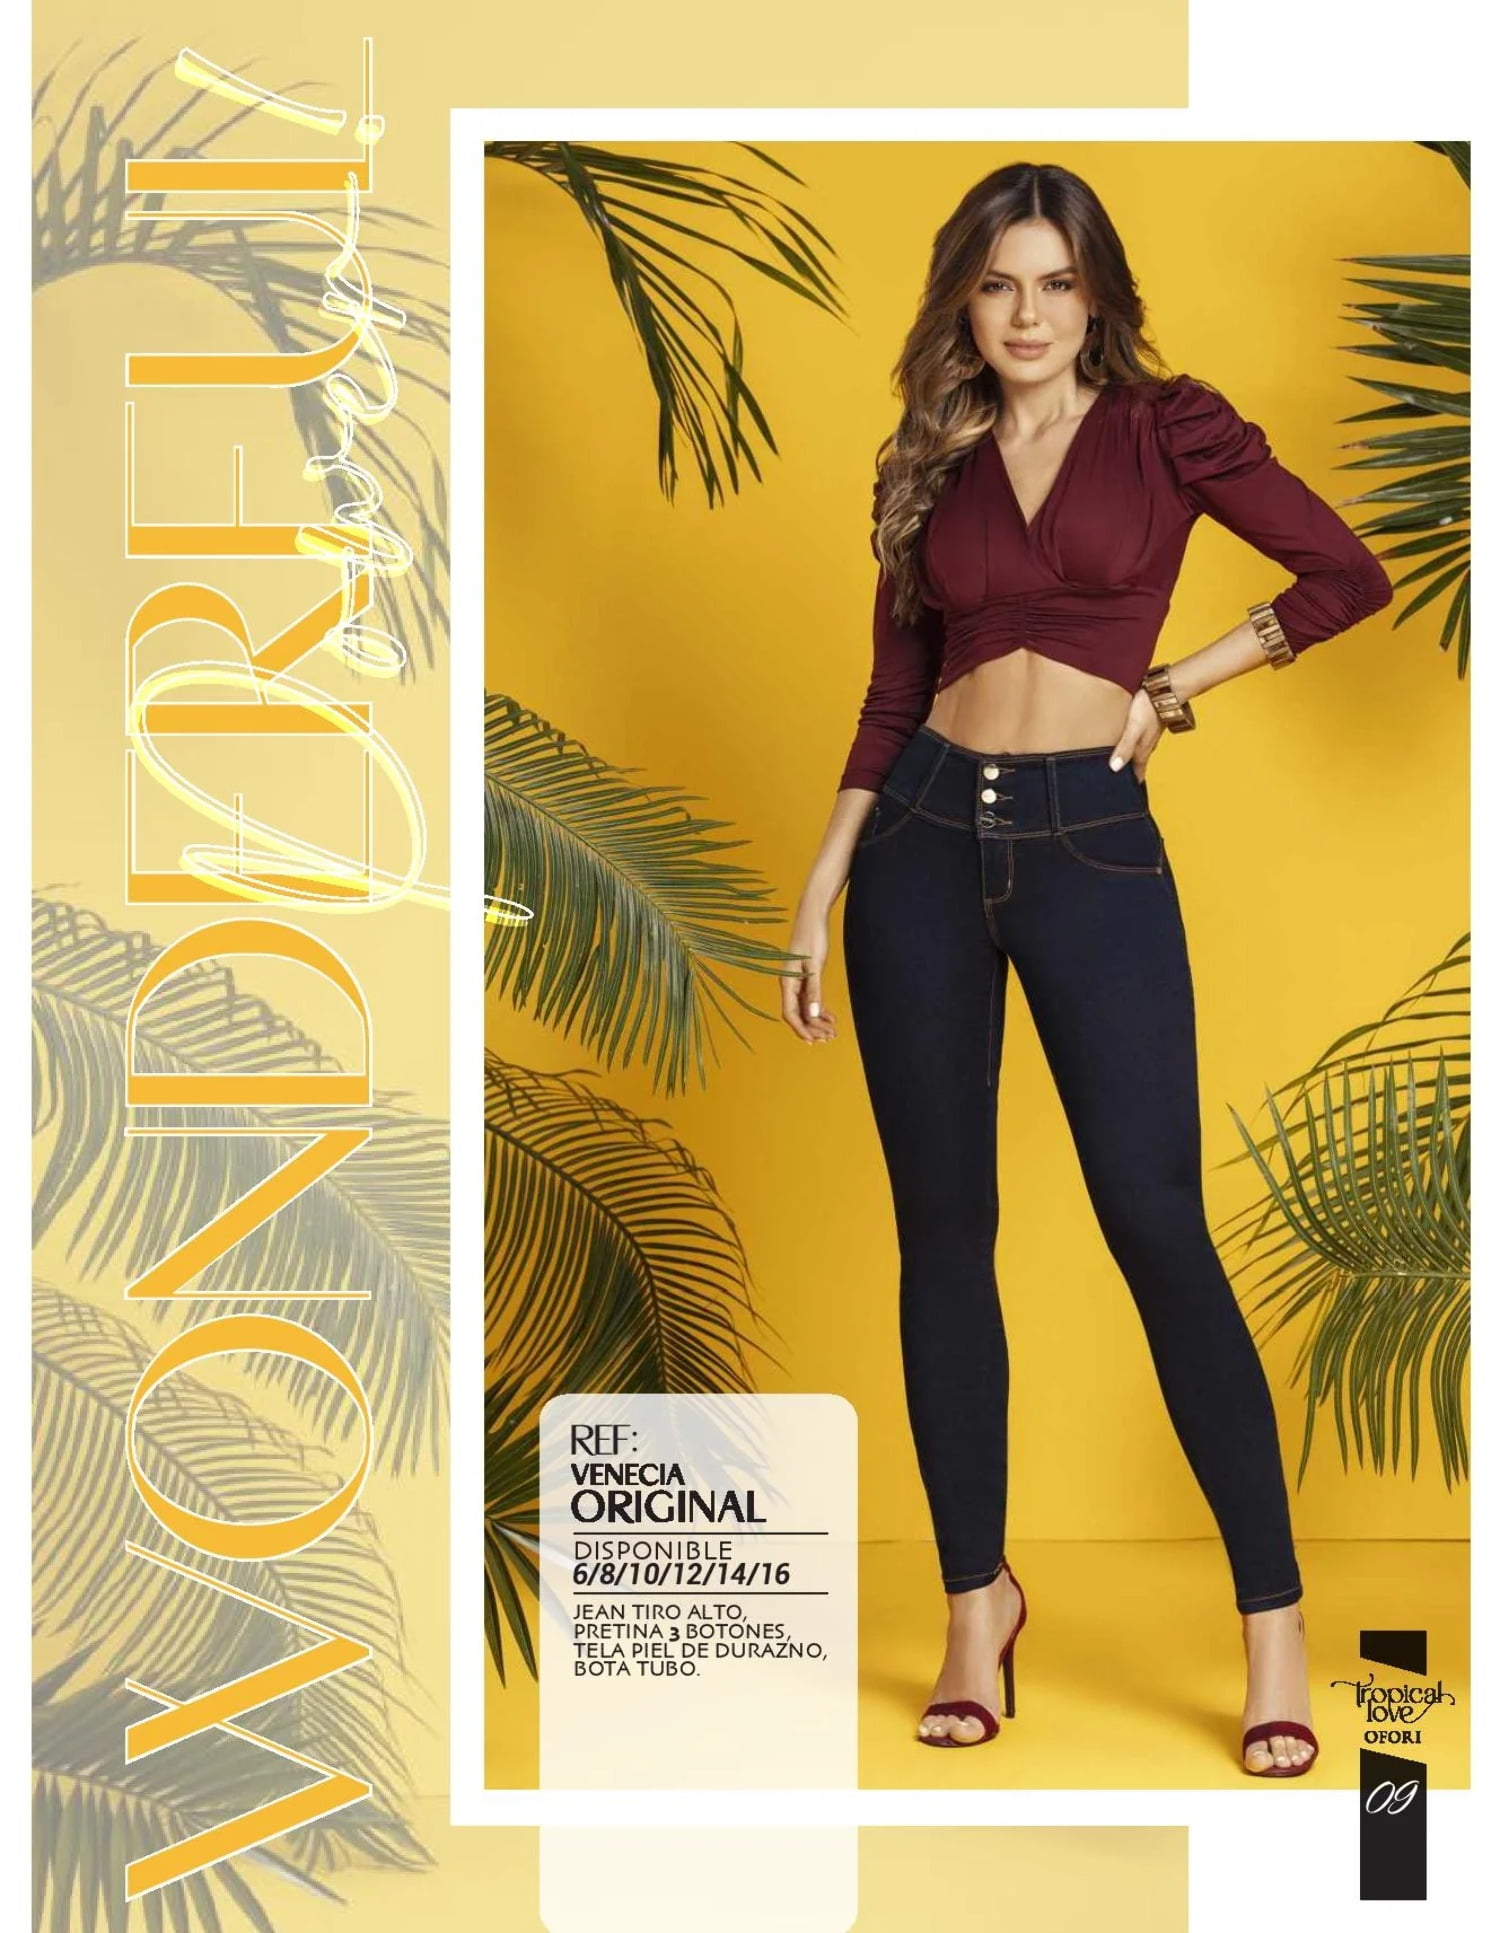 Venecia Original 100% Authentic Colombian Push Up Jeans 